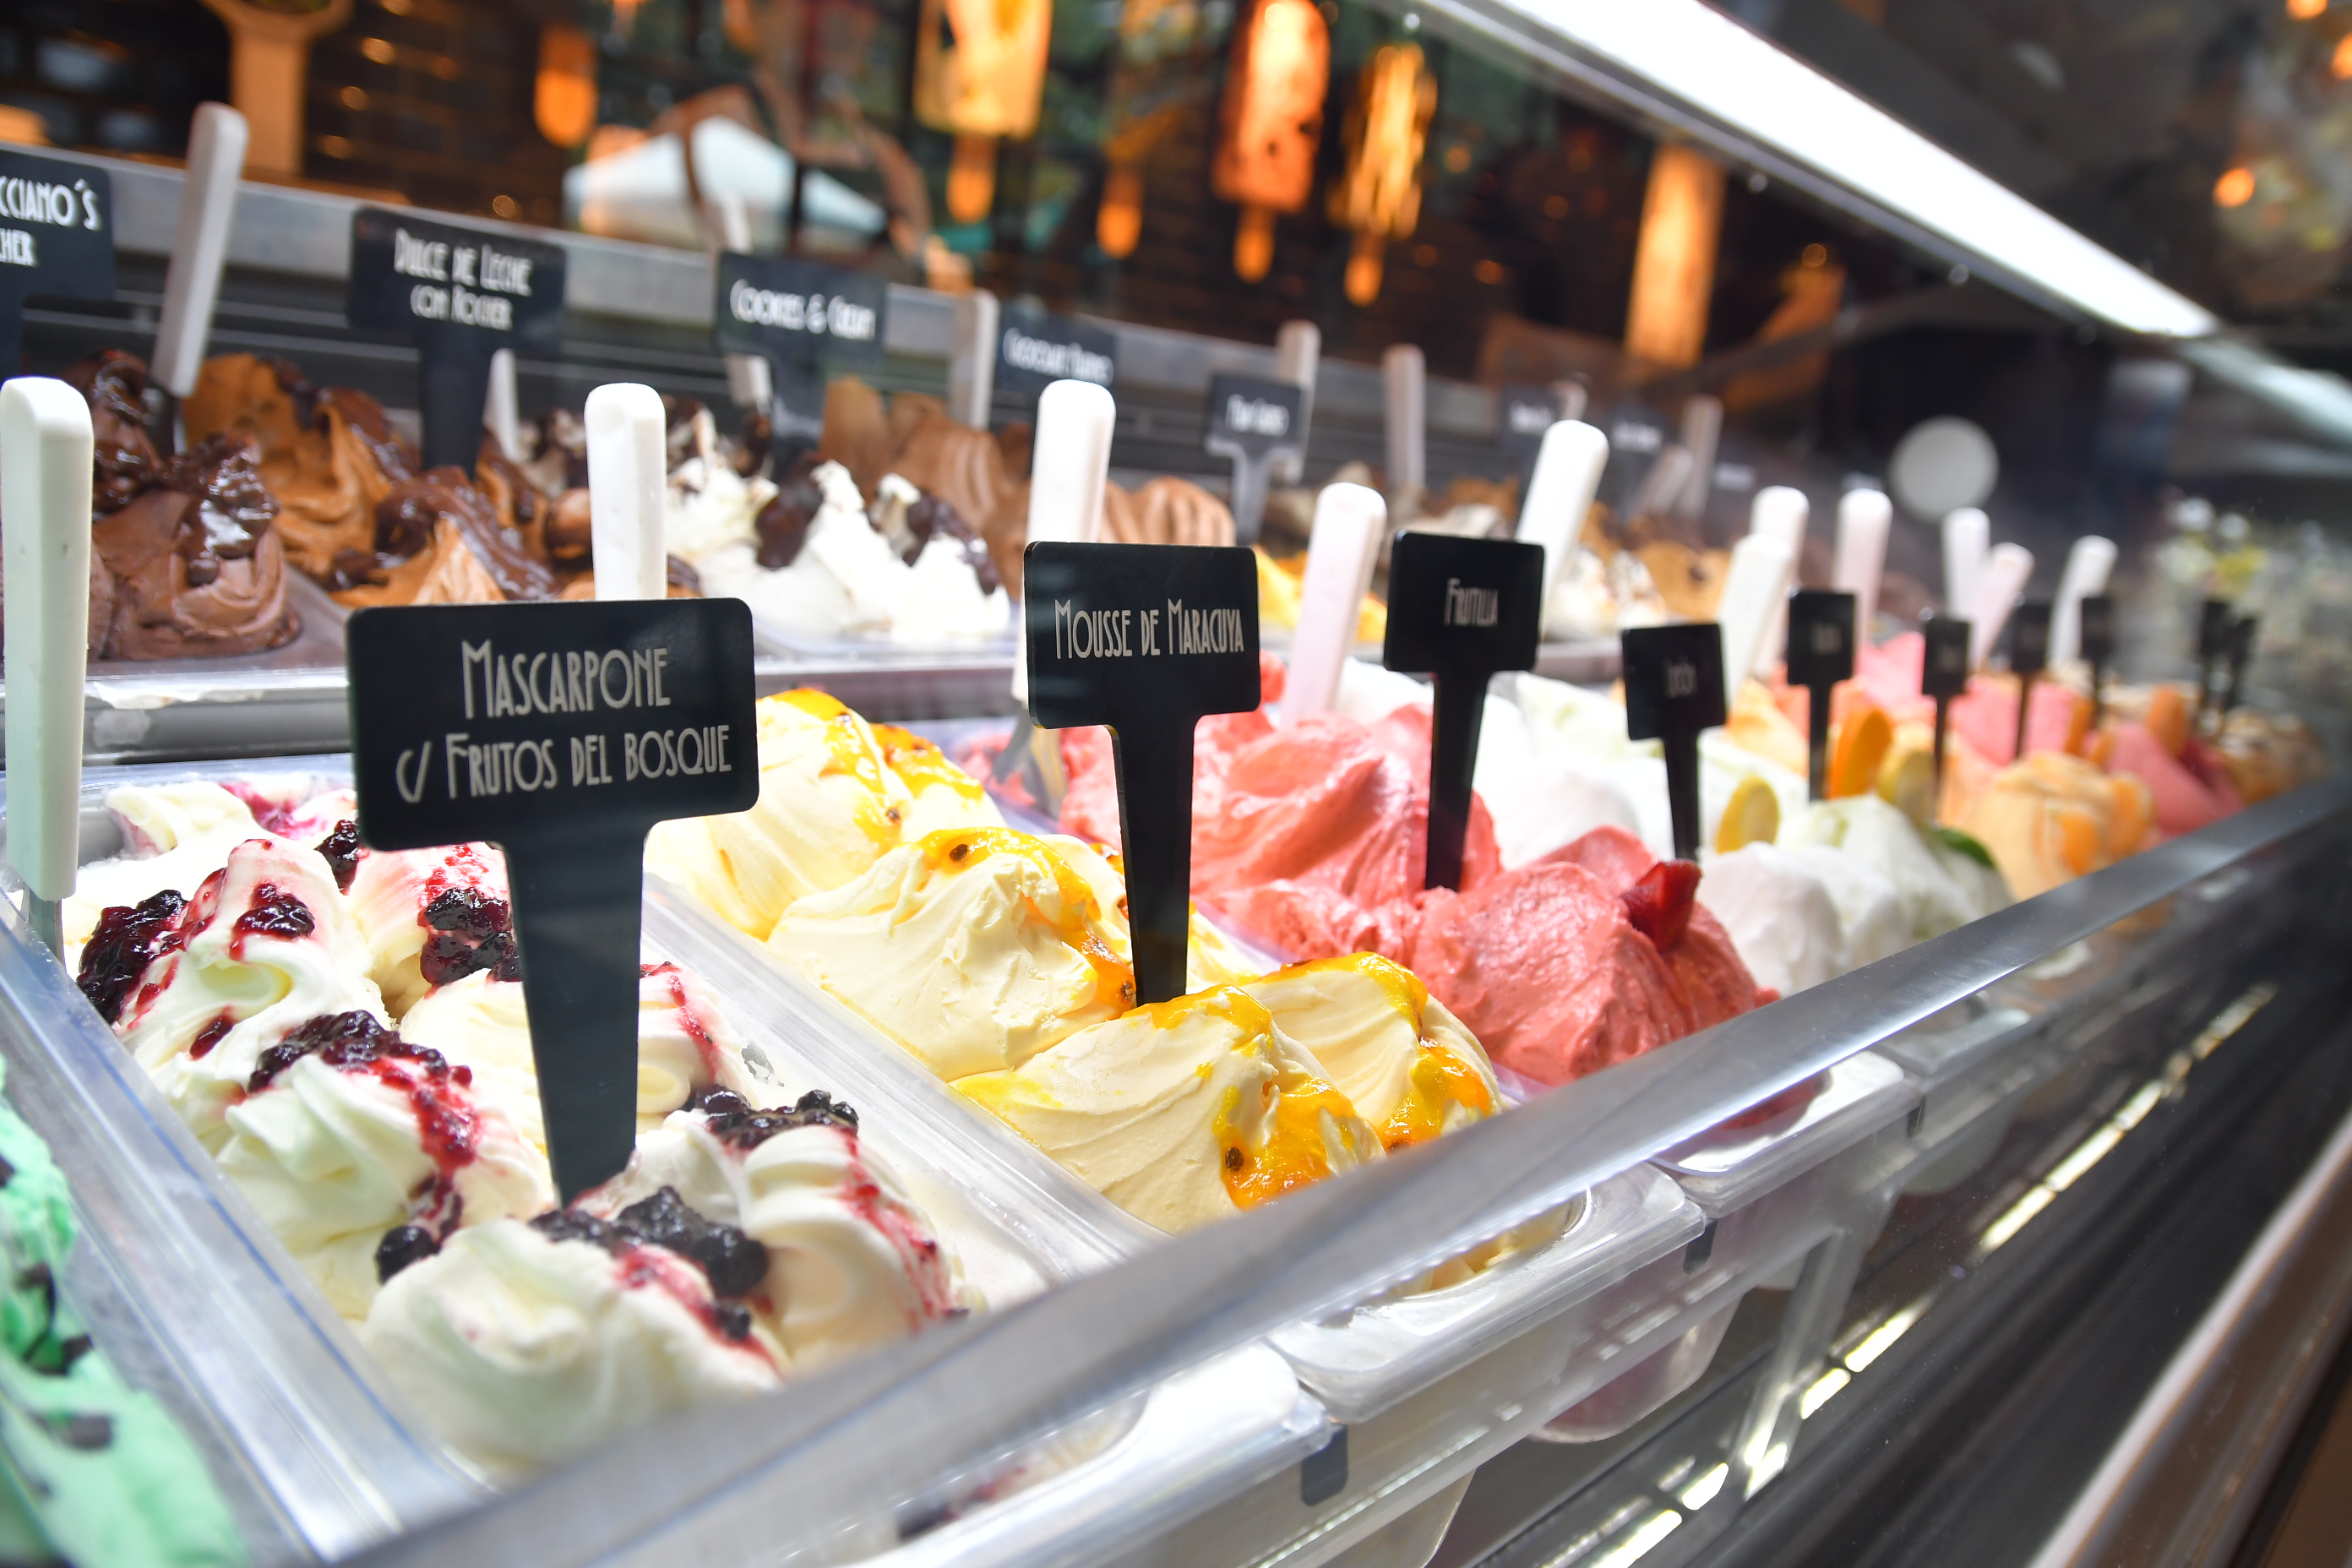  Los vecinos eligieron a Lucciano’s como la mejor heladería artesanal de la Ciudad